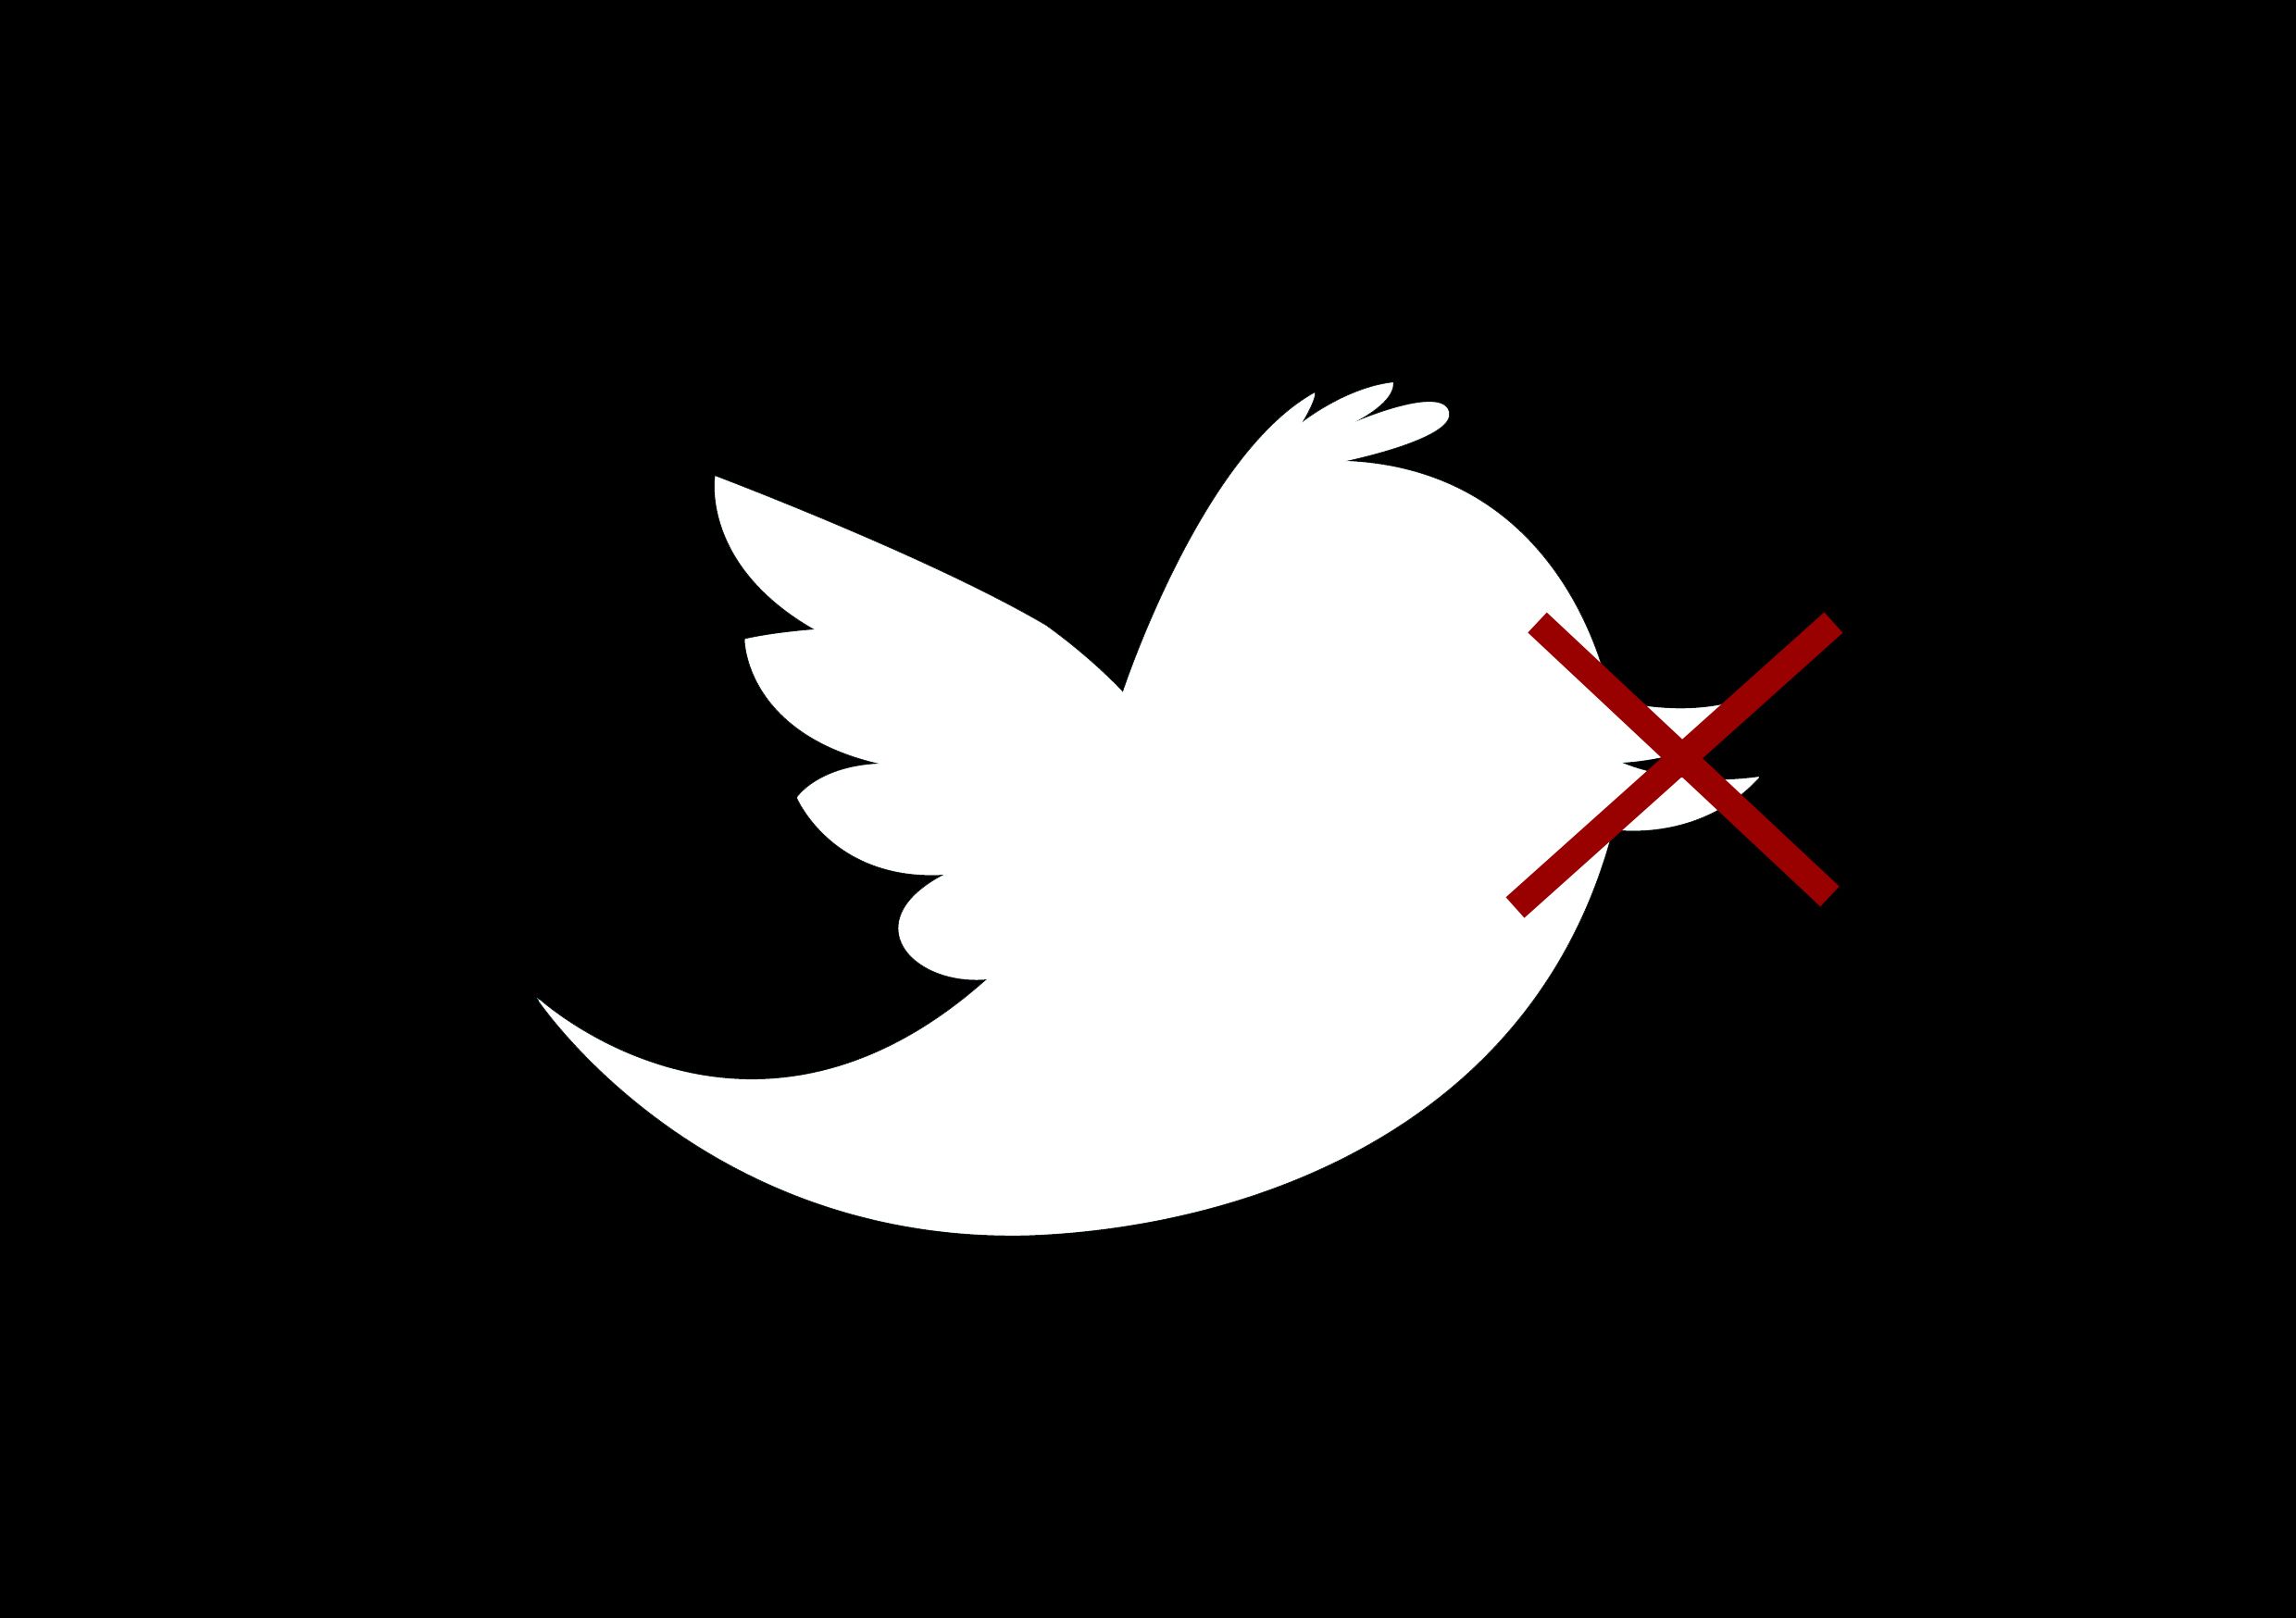 2. twitter censorship